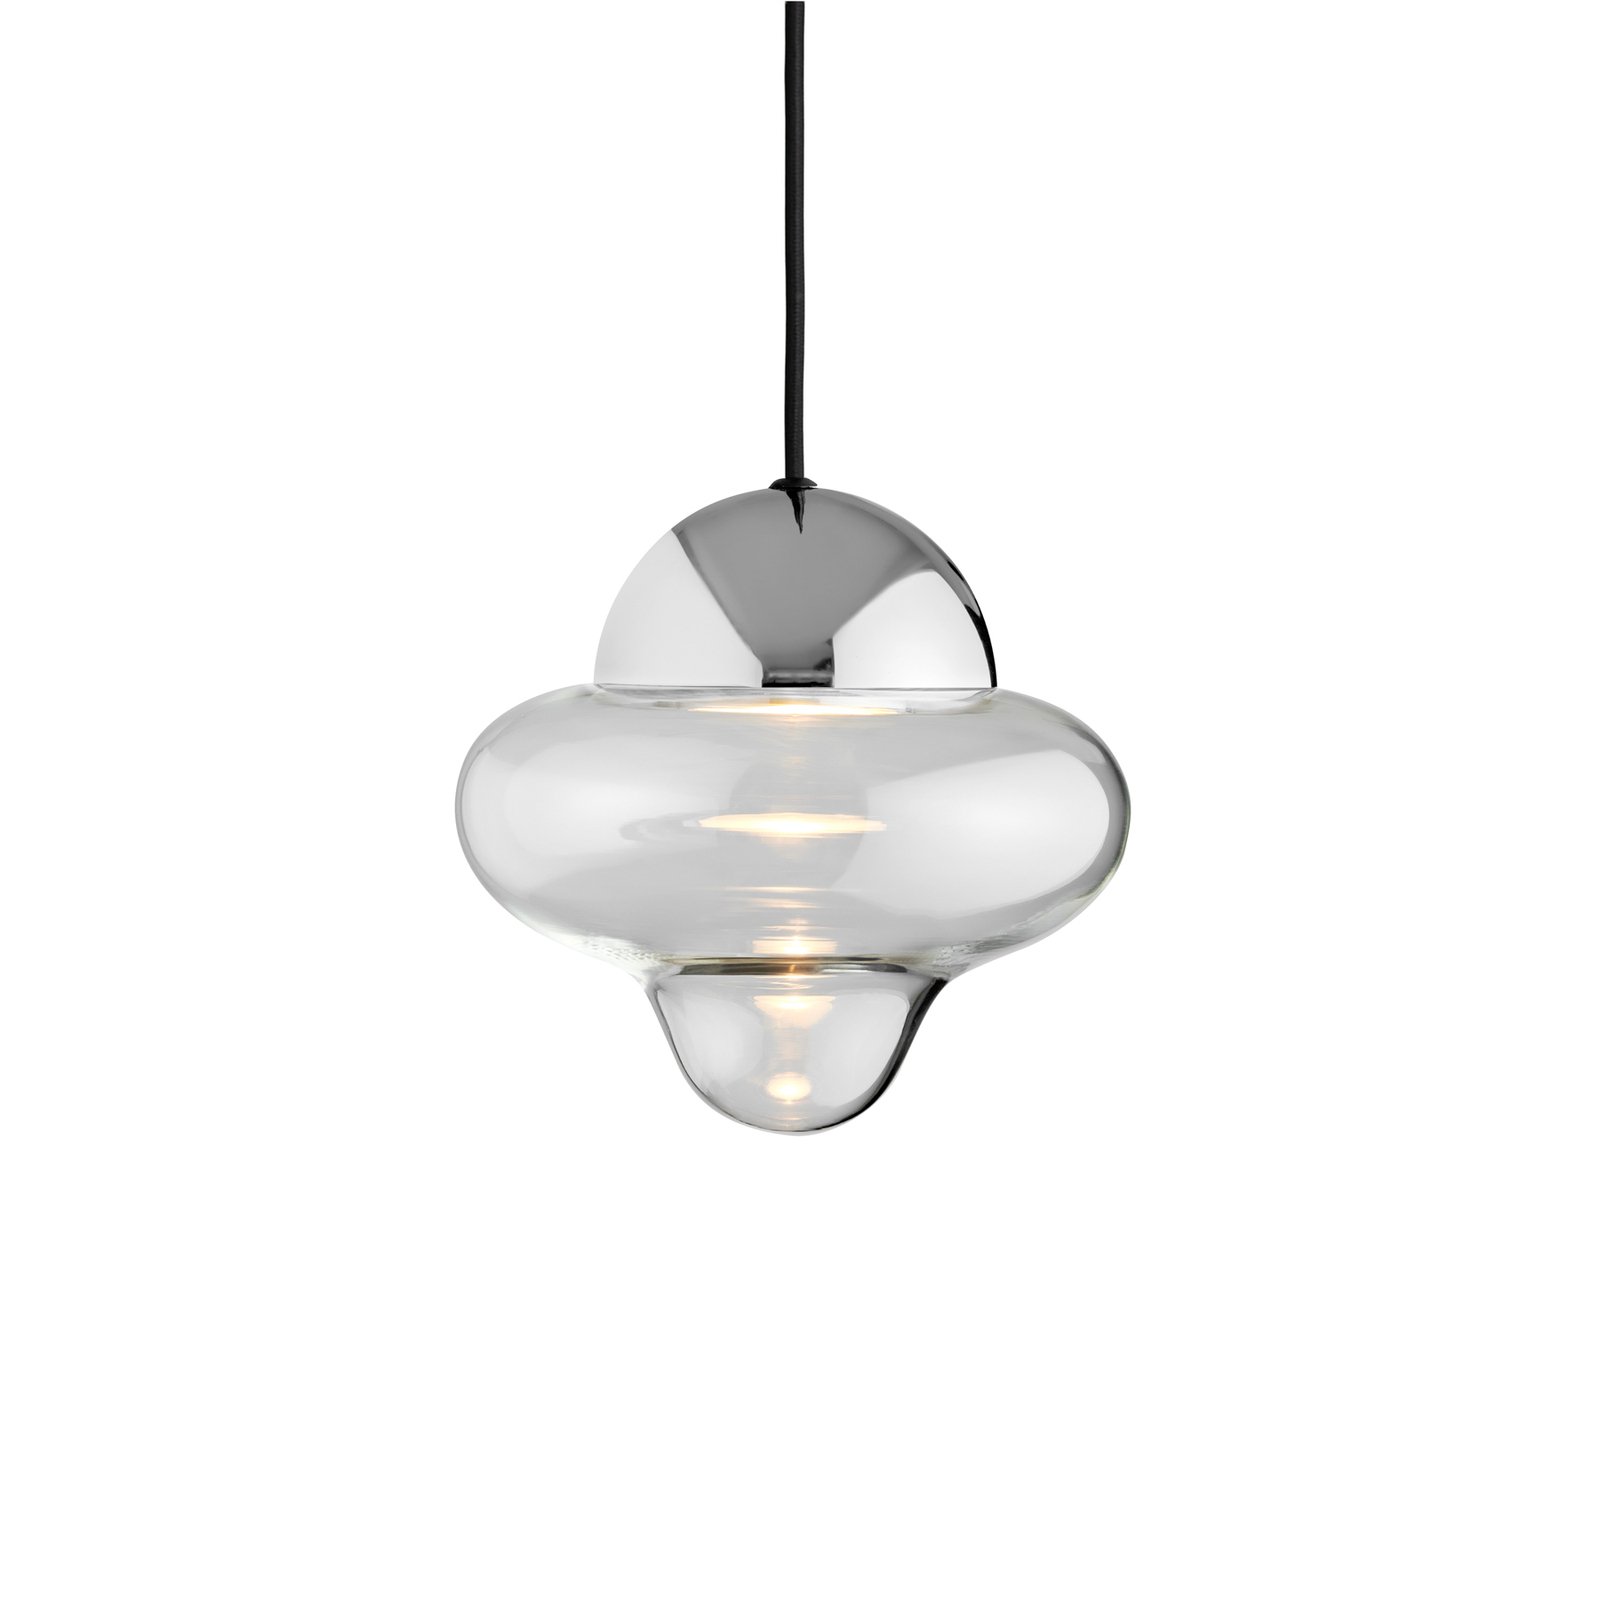 LED pendant light Nutty, clear / chrome-coloured, Ø 18.5 cm, glass